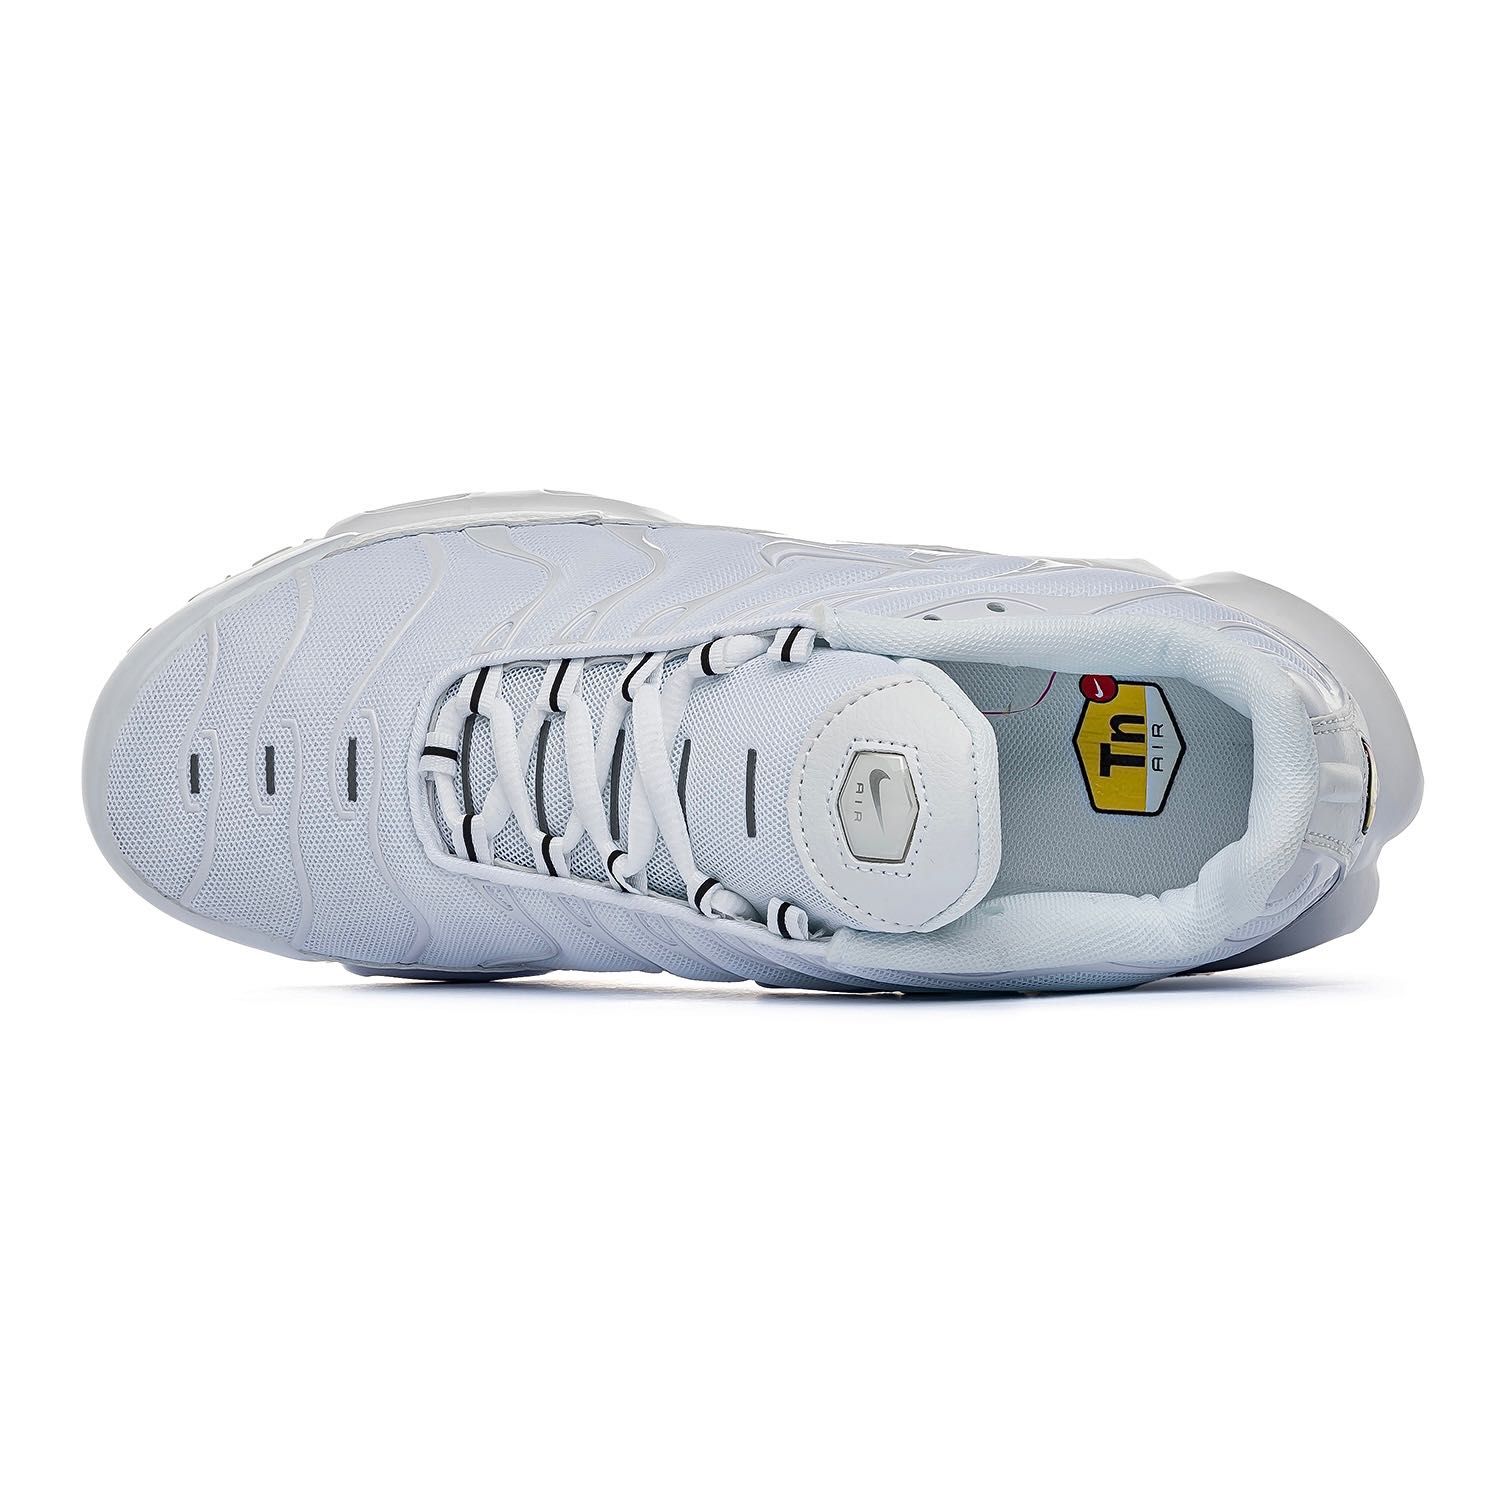 Мужские кроссовки Nike Air Max TN Plus Full White. Размеры 40-45